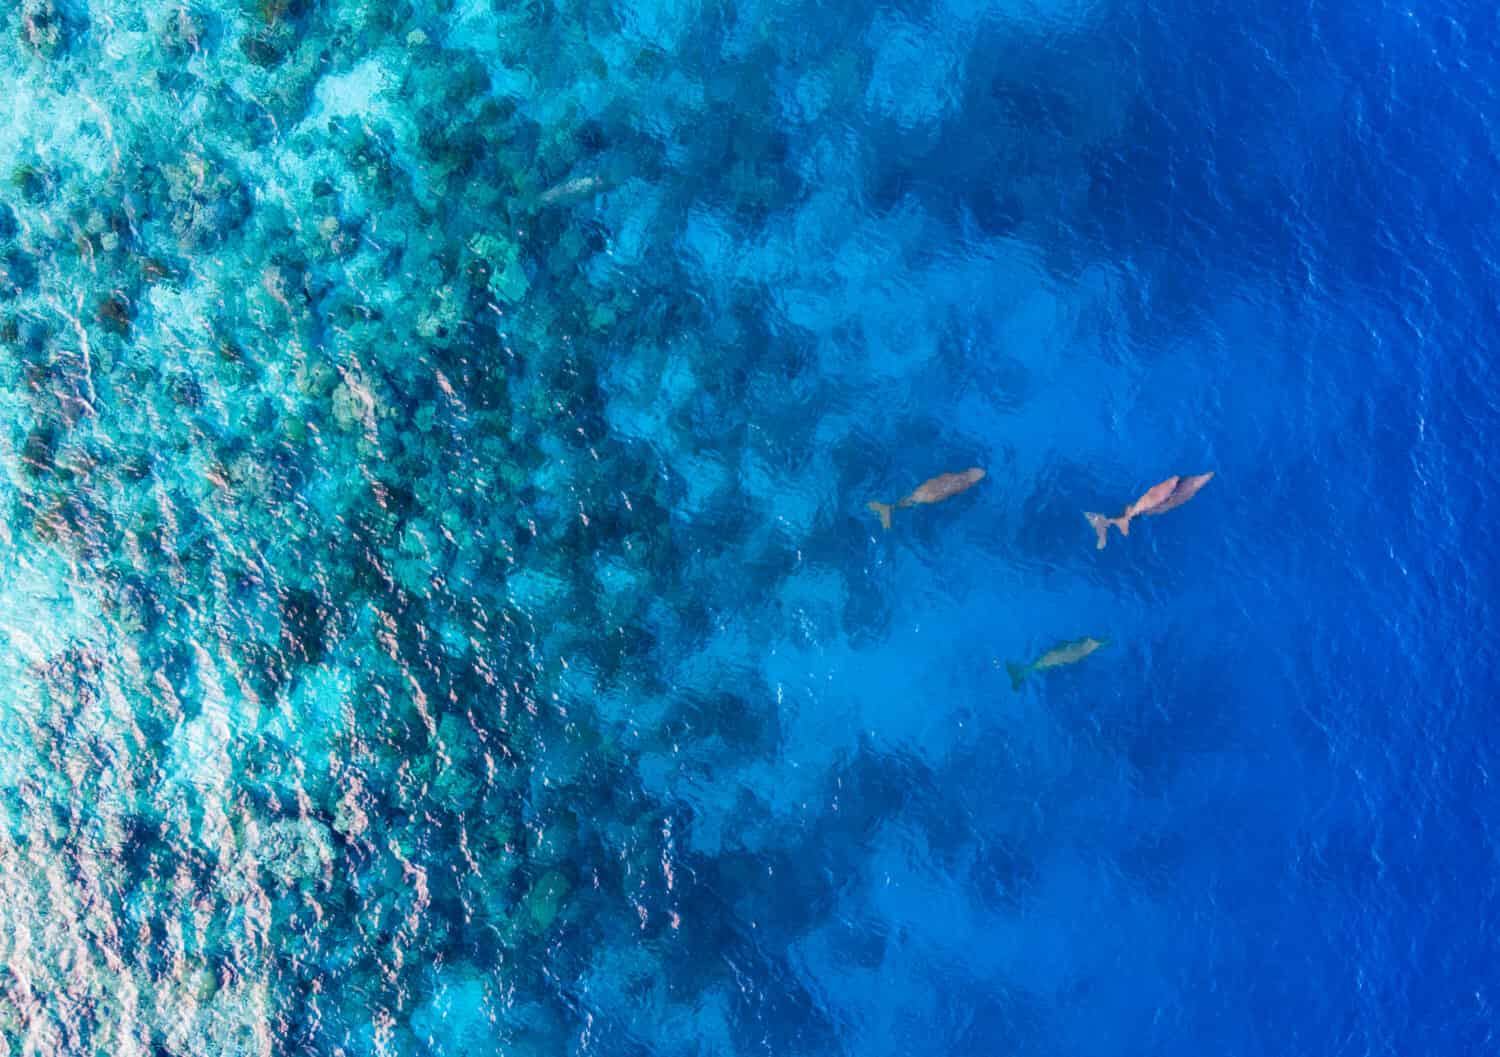 La colonia di mammiferi marini Dugongs (mucca di mare) nuota e respira nell'oceano dell'isola di Sangihe, Sulawesi settentrionale, Indonesia.  Questo mammifero è protetto dalla regolamentazione internazionale dell'habitat. 